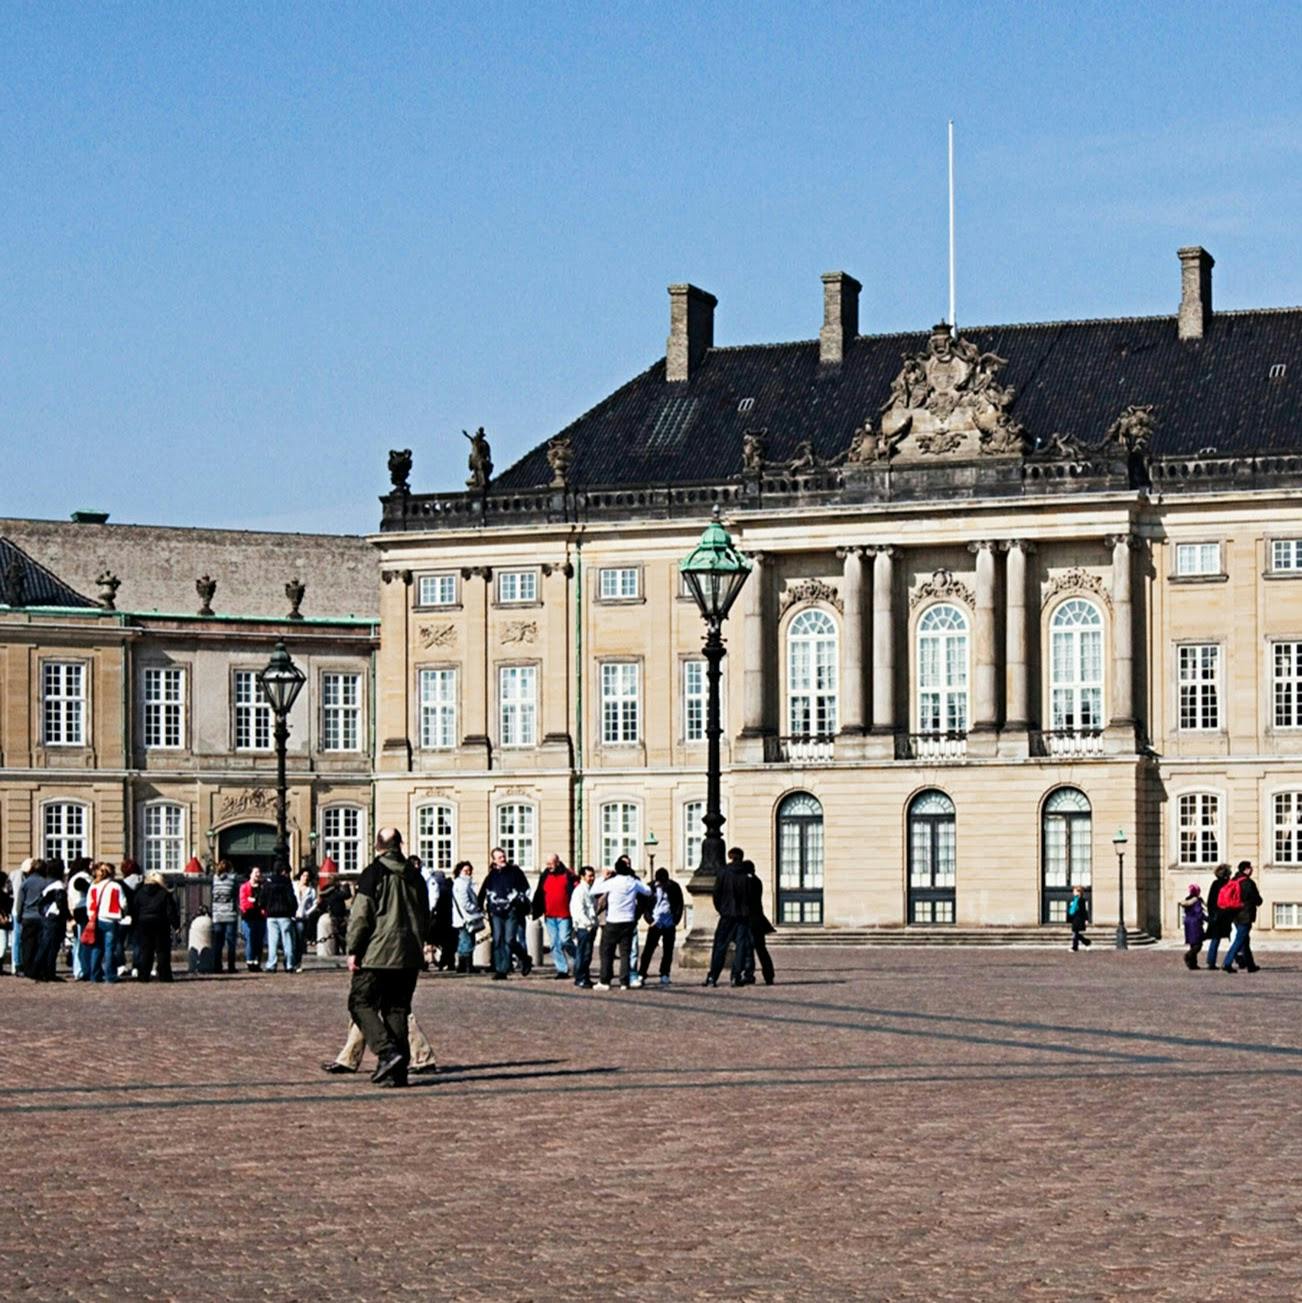 Image - Amalienborg